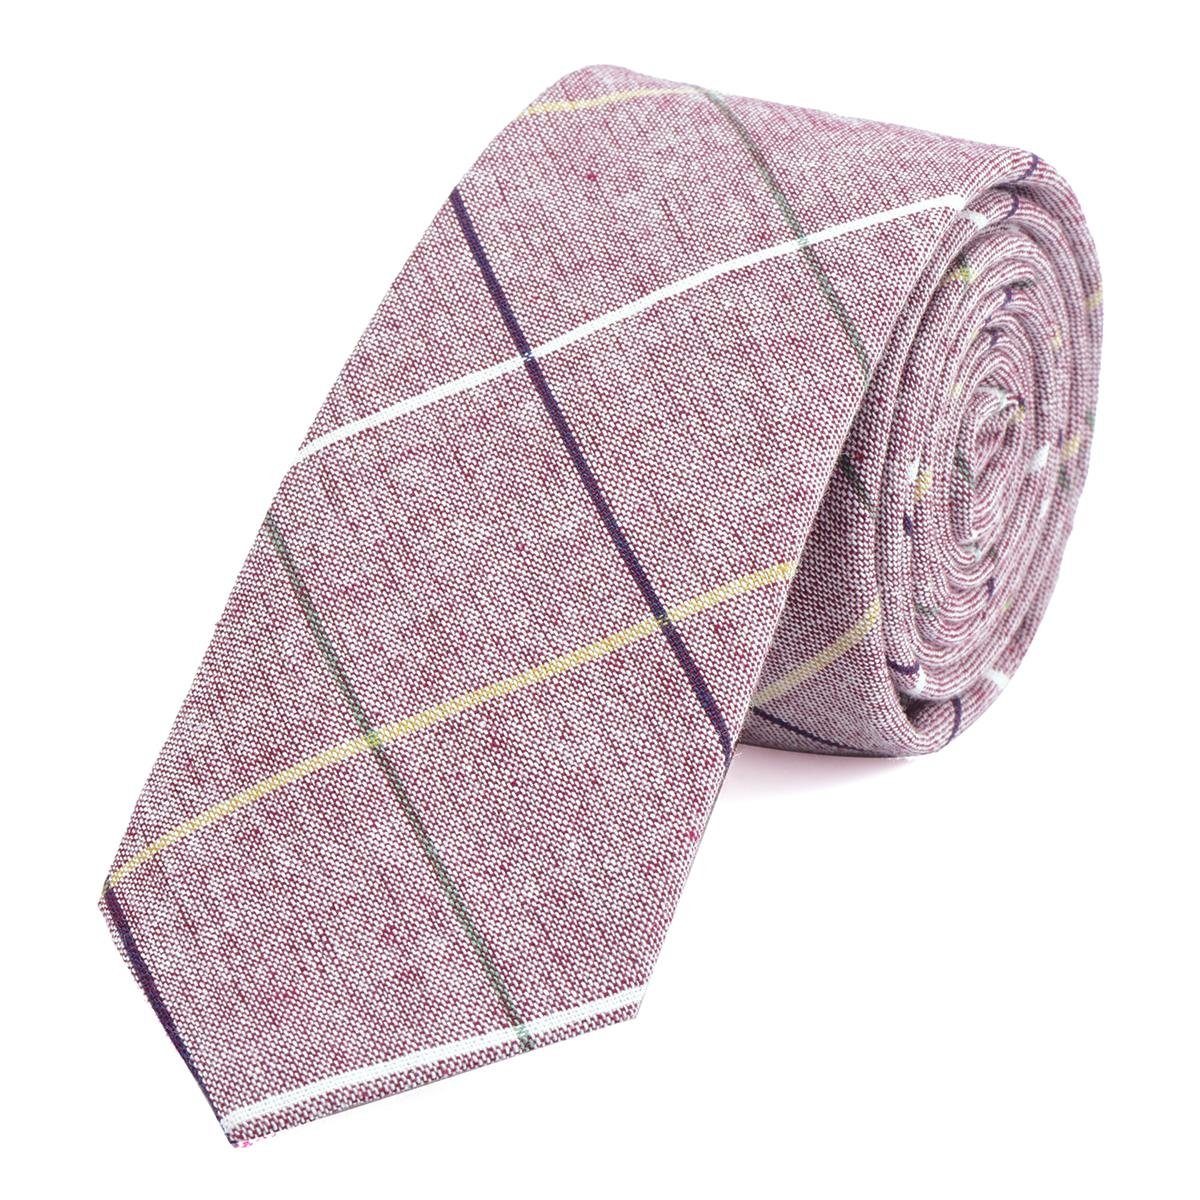 DonDon Krawatte Herren Krawatte 6 cm (Packung, 1-St., 1x Krawatte) Baumwolle, kariert oder gestreift, für Büro oder festliche Veranstaltungen rot-weiß gestreift